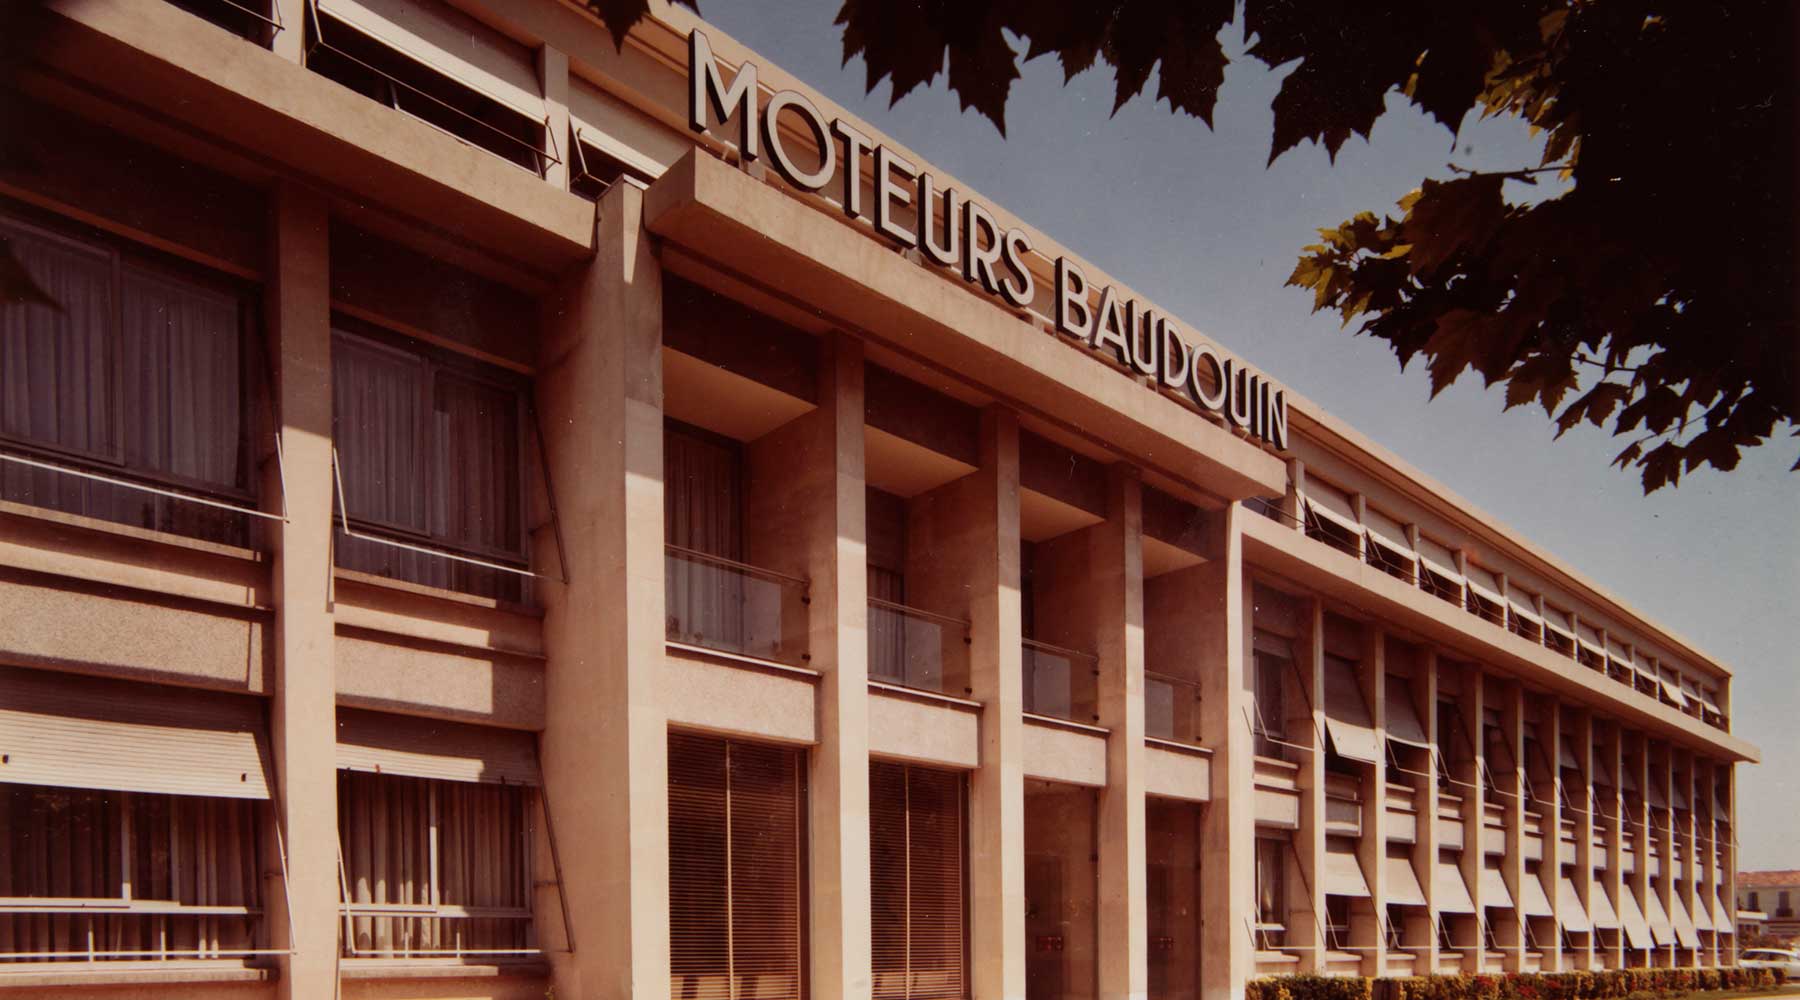 Old Moteurs Baudouin building.